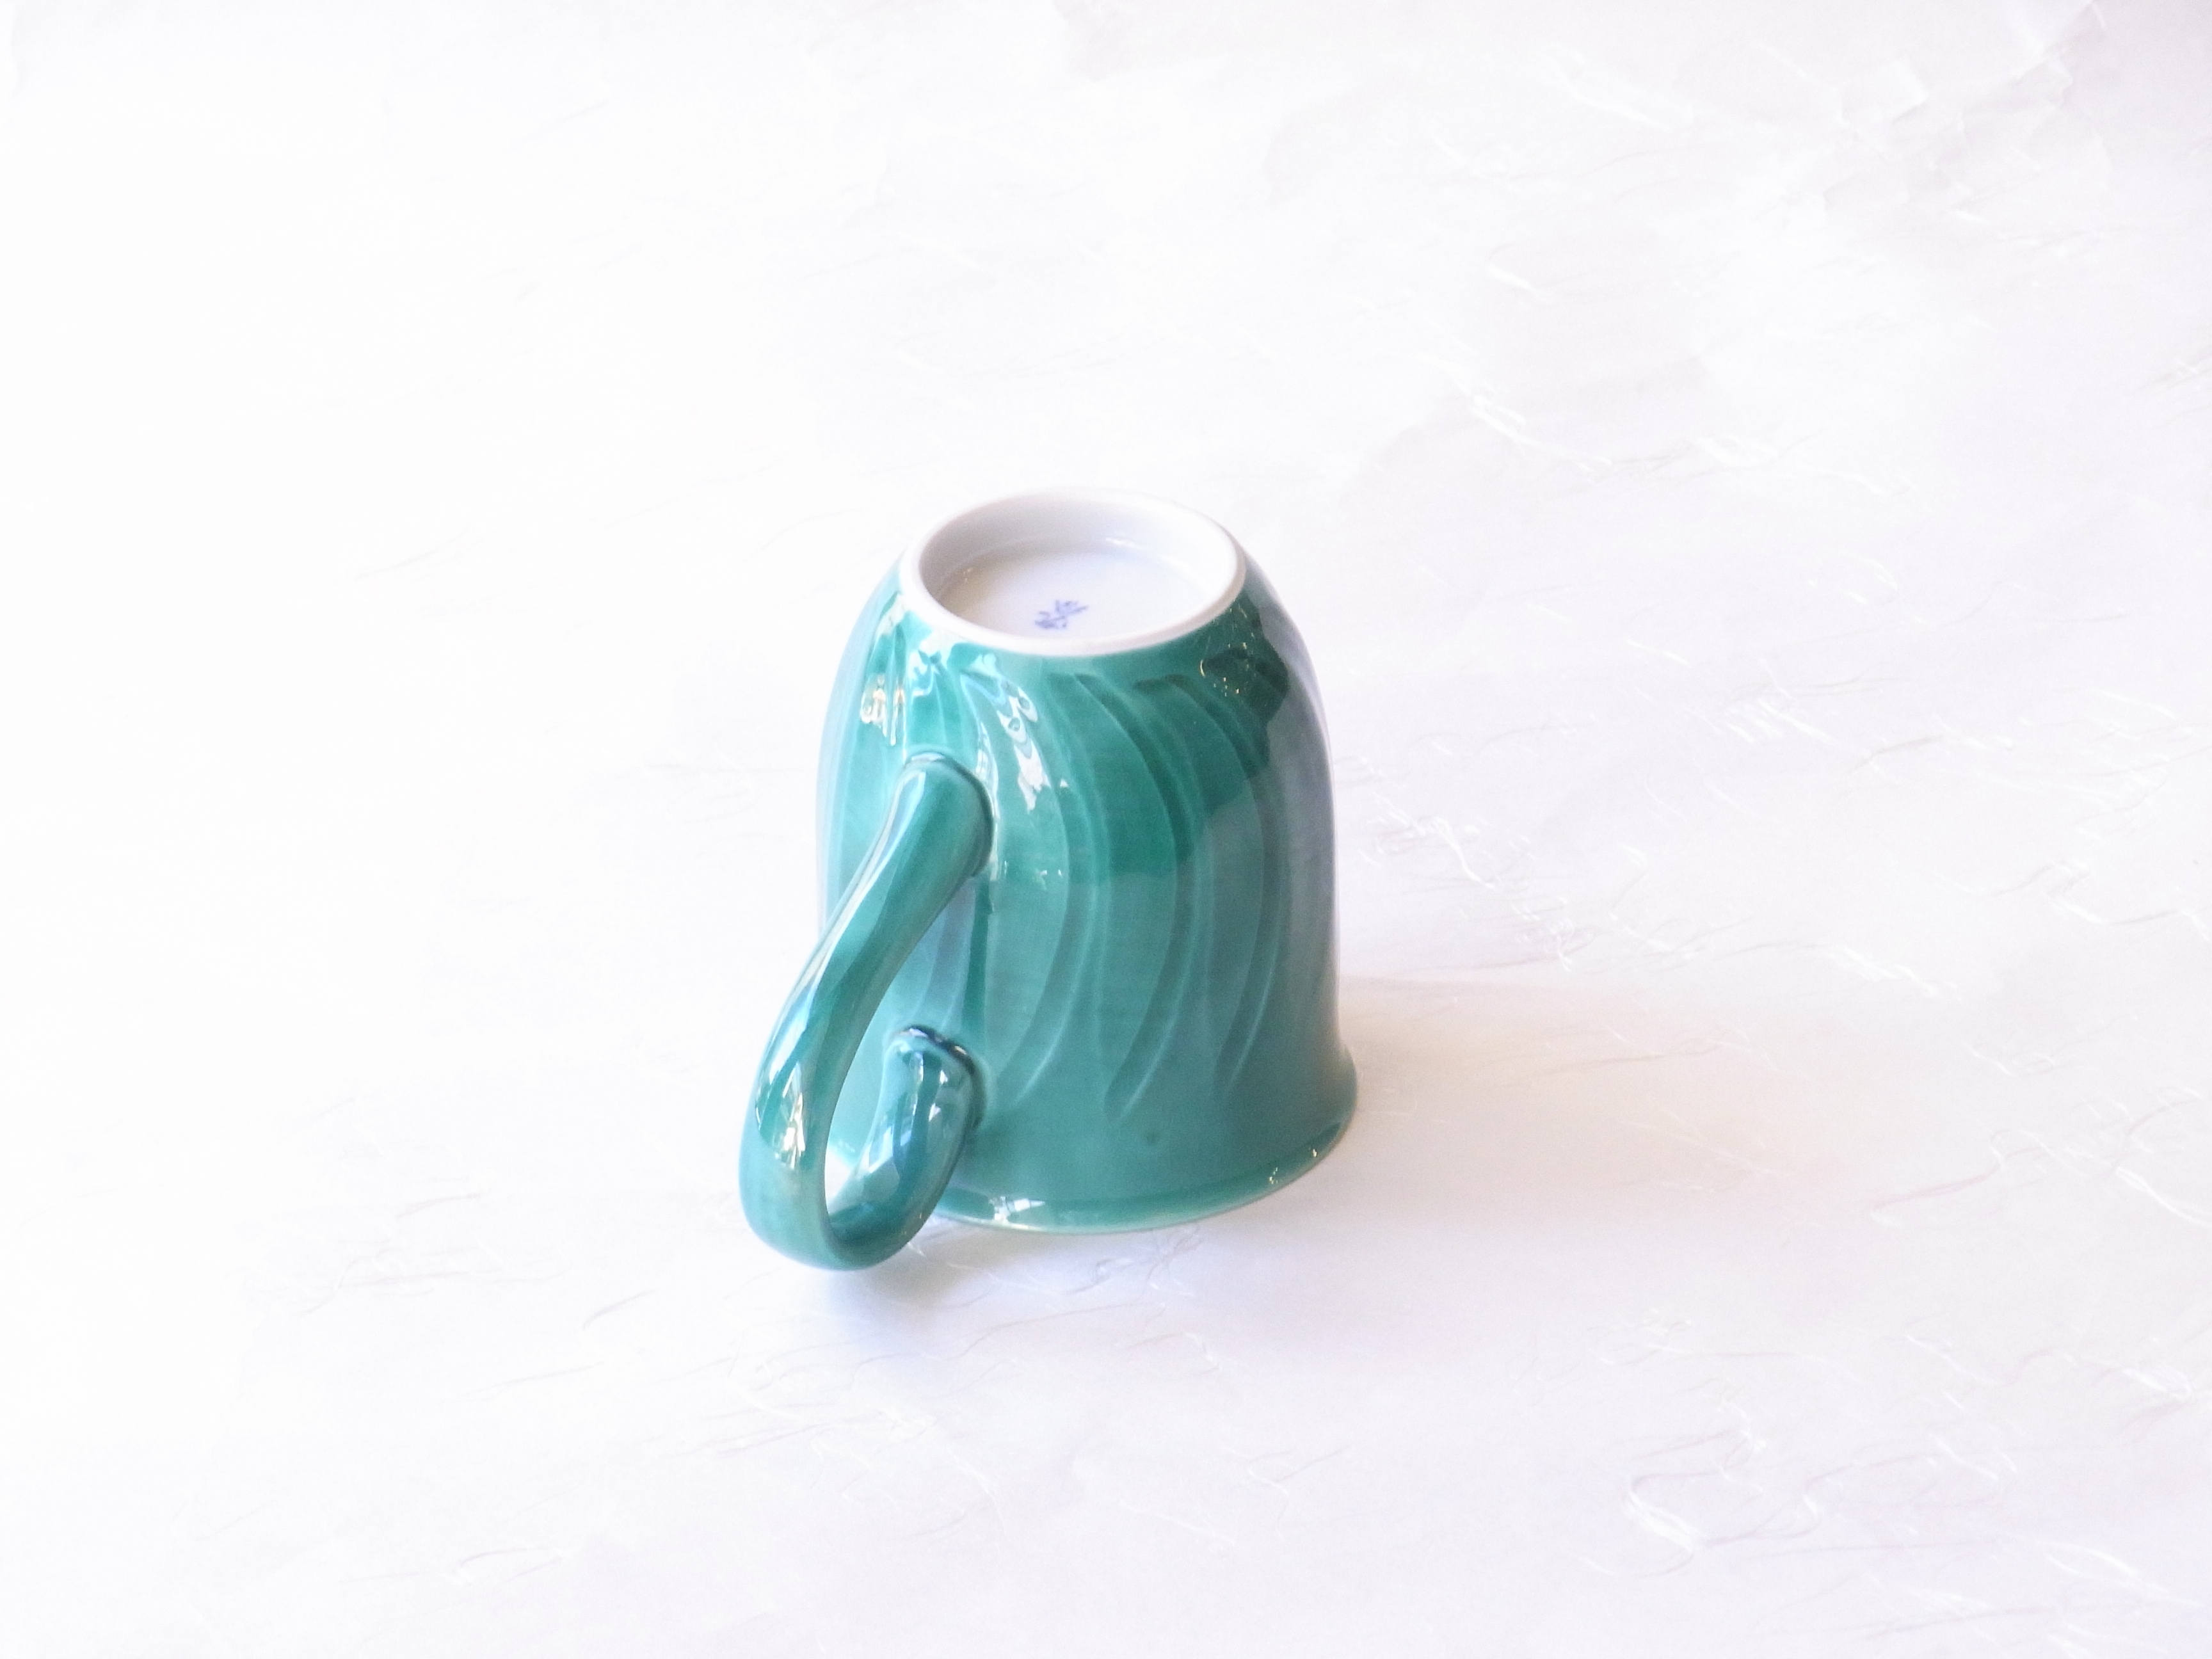 陶磁器　清水焼　青交趾　マグカップ　緑色　グリーン色　陶器　青　青葉　信号機　青信号　焼物の世界　昔からの表現　青緑色　青が混じった緑　とてもきれい　本体に削ぎ　一つのデザイン　口の部分　羽反り　飲みやすい　持ち手も大振り　持ちやすい　内側　シンプルな真っ白　飲み物の色よく見える　容量２００ｃｃ　標準的な大きさ　磁器製　硬い　吸水性がない　扱いやすい　さわやか　美しい緑色　日本製　陶器　磁器　陶磁器　漆器　茶道具　華道具　贈り物　ギフト　記念品　引出物　法要　お返し　専門店　リアル店舗　茶の湯　茶道　裏千家　表千家　茶会　月釜　抹茶　高品質　安らぎ　いやし　よりおいしく　安心　機能的　長持ち　人気　おすすめ　高機能　ネット通販　ネットショップ　セレクトショップ　欲しい　購入　買う　買い物　岐阜県　岐阜市　美殿町　小林漆陶　特別な　選び抜かれた　品質重視　使いやすい　格安　老舗　誕生日　結婚　出産　入学　退職　母の日　父の日　敬老の日　クリスマス　プレゼント　叙勲　長寿　新築　お祝い　御礼　内祝い　外国土産　海外みやげ　実店舗　創業１００年以上　使うと分かる　職人技 日本一の品揃え　日本一の在庫数　専門店　専門知識　数万点の在庫　百貨店（高島屋　三越　伊勢丹　松坂屋　大丸）にない　手作り　お洒落　高級品　希少価値　上質な器 伝統工芸品　コスパ　お値打ち　お買い得　堅牢　飽きない　永く使える　お気に入り　国産　料理が映える　満足感　豊かな食生活　豊かな食文化　こだわりの器　日本文化　他にない　ここにしかない　オリジナル　独自の　個性的　ここでしか買えない　超レアもの　一品もの　現品限り　入手困難　いい器　匠の技　美しい　実用的　外人が喜ぶ店　外人が珍しがる店　外人がうれしい店　日本各地の一級品を売る店　日本全国の器を売る店　本当にいいもの コスパ高い　一流品　修理　選りすぐりの逸品　周年記念　永年勤続表彰　退職記念　卒業記念　日本土産　岐阜土産　岐阜のおみやげ　岐阜の特産品　料理を引き立てる器　高級店　一流店　岐阜で一番　東海で一番　中部で一番　日本で一番　おしゃれな店　地域一番店　実店舗　陶磁器　磁器　華道具　ガラス器　明治４２年創業　有田焼　清水焼　美濃焼　赤津焼　万古焼　常滑焼　九谷焼　唐津焼　萩焼　信楽焼　万古焼　砥部焼　備前焼　丹波焼　山中塗　春慶塗　讃岐塗　越前塗　輪島塗　紀州塗　会津塗　小田原木工　桜皮細工　秋田杉　駿河竹細工　七宝焼　南部鉄器　錫製品　江戸切子　津軽びいどろ　